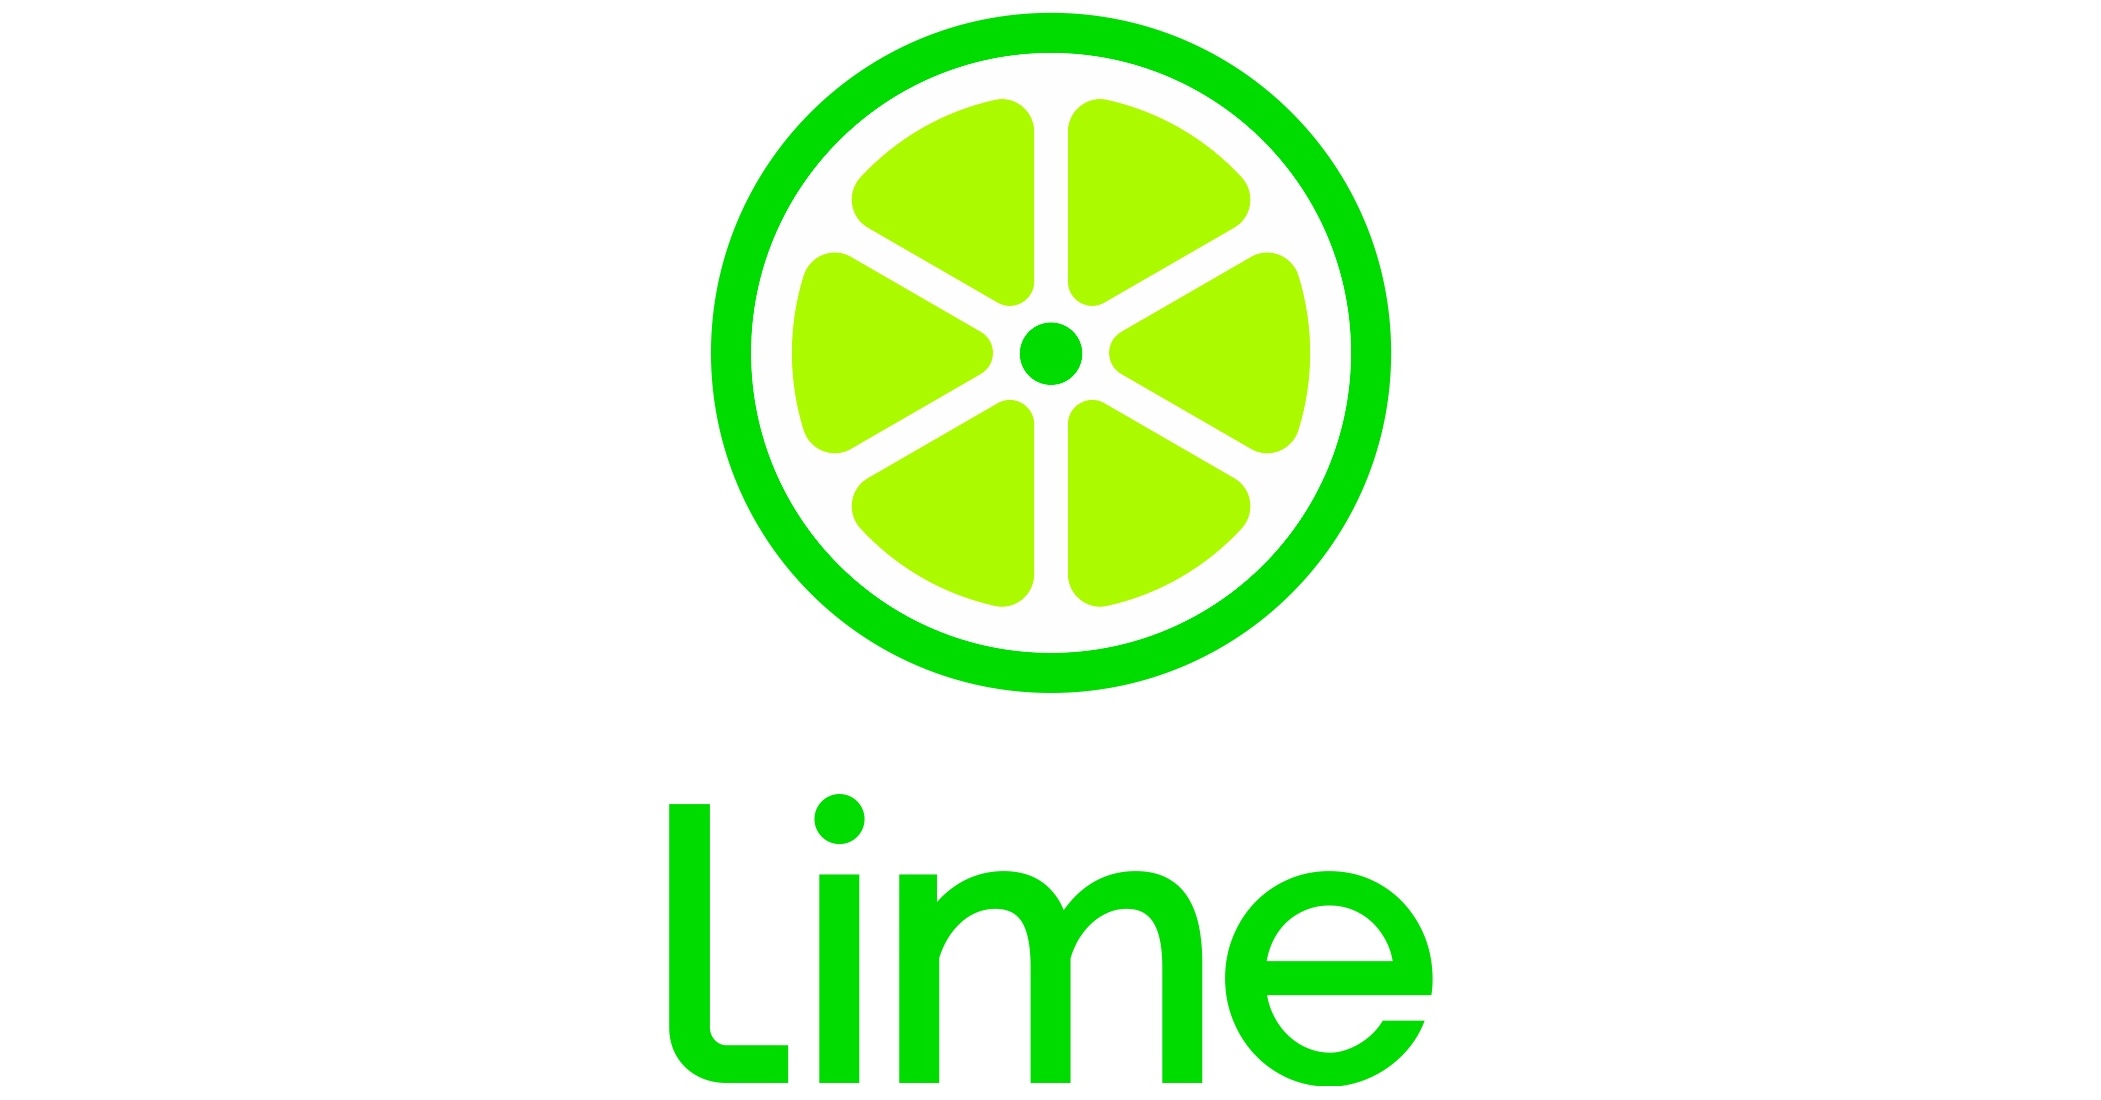 LimeBike_Logo